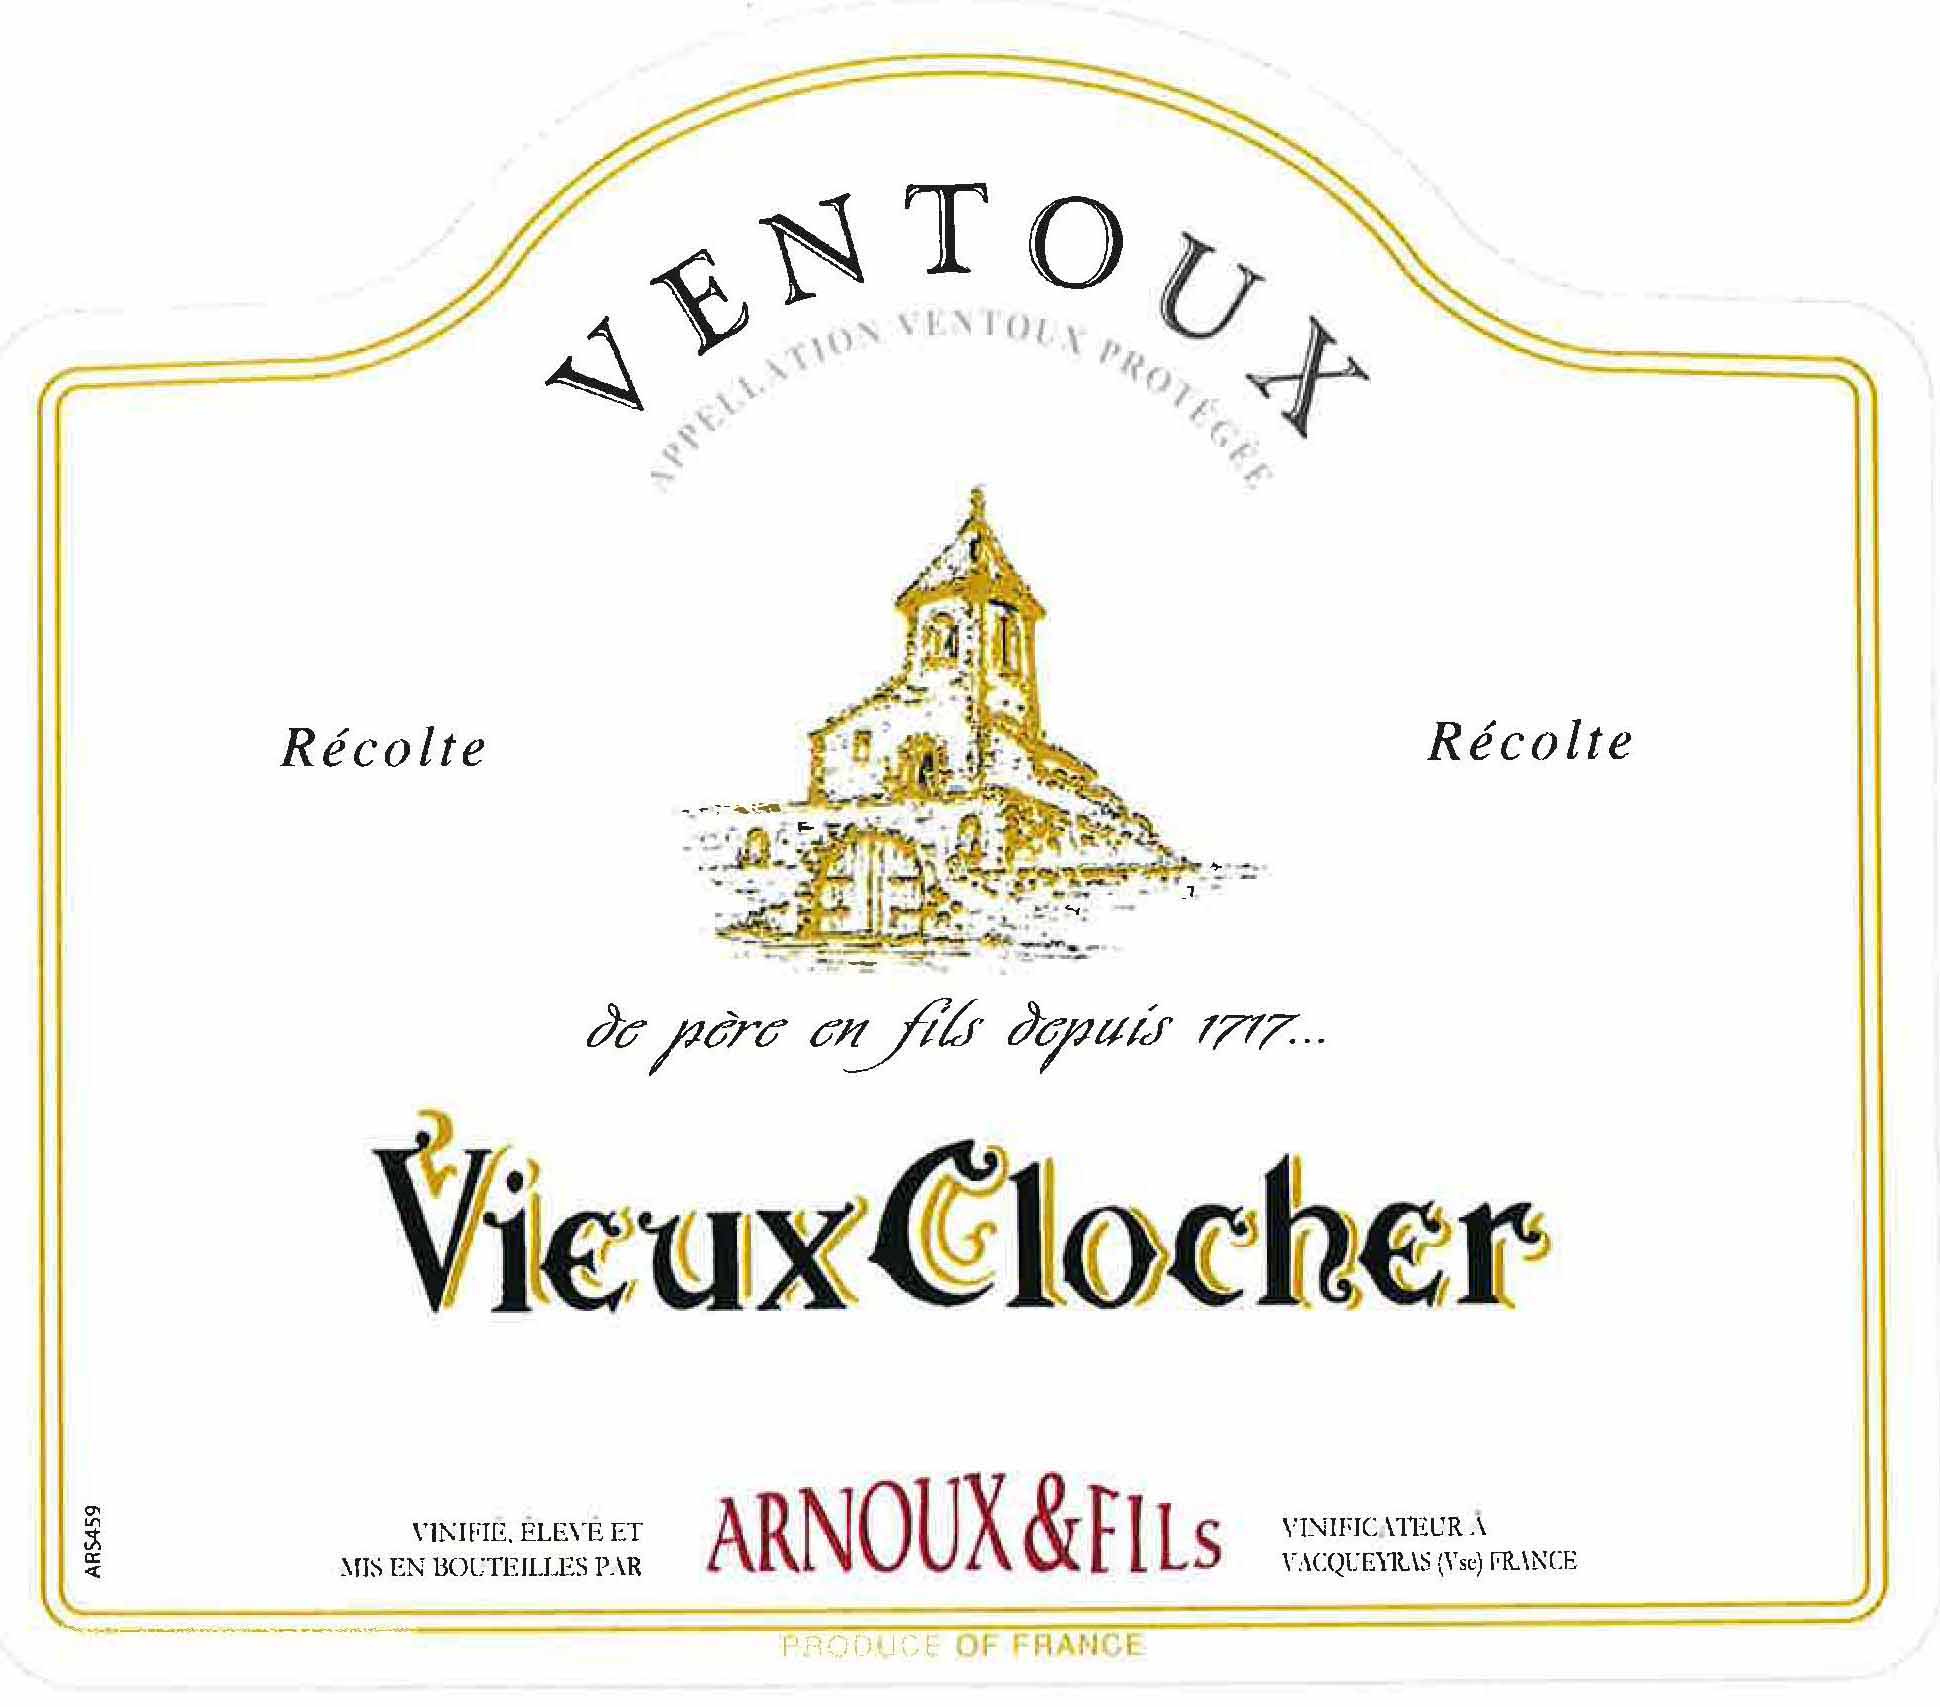 Arnoux & Fils - Vieux Clocher - Ventoux label